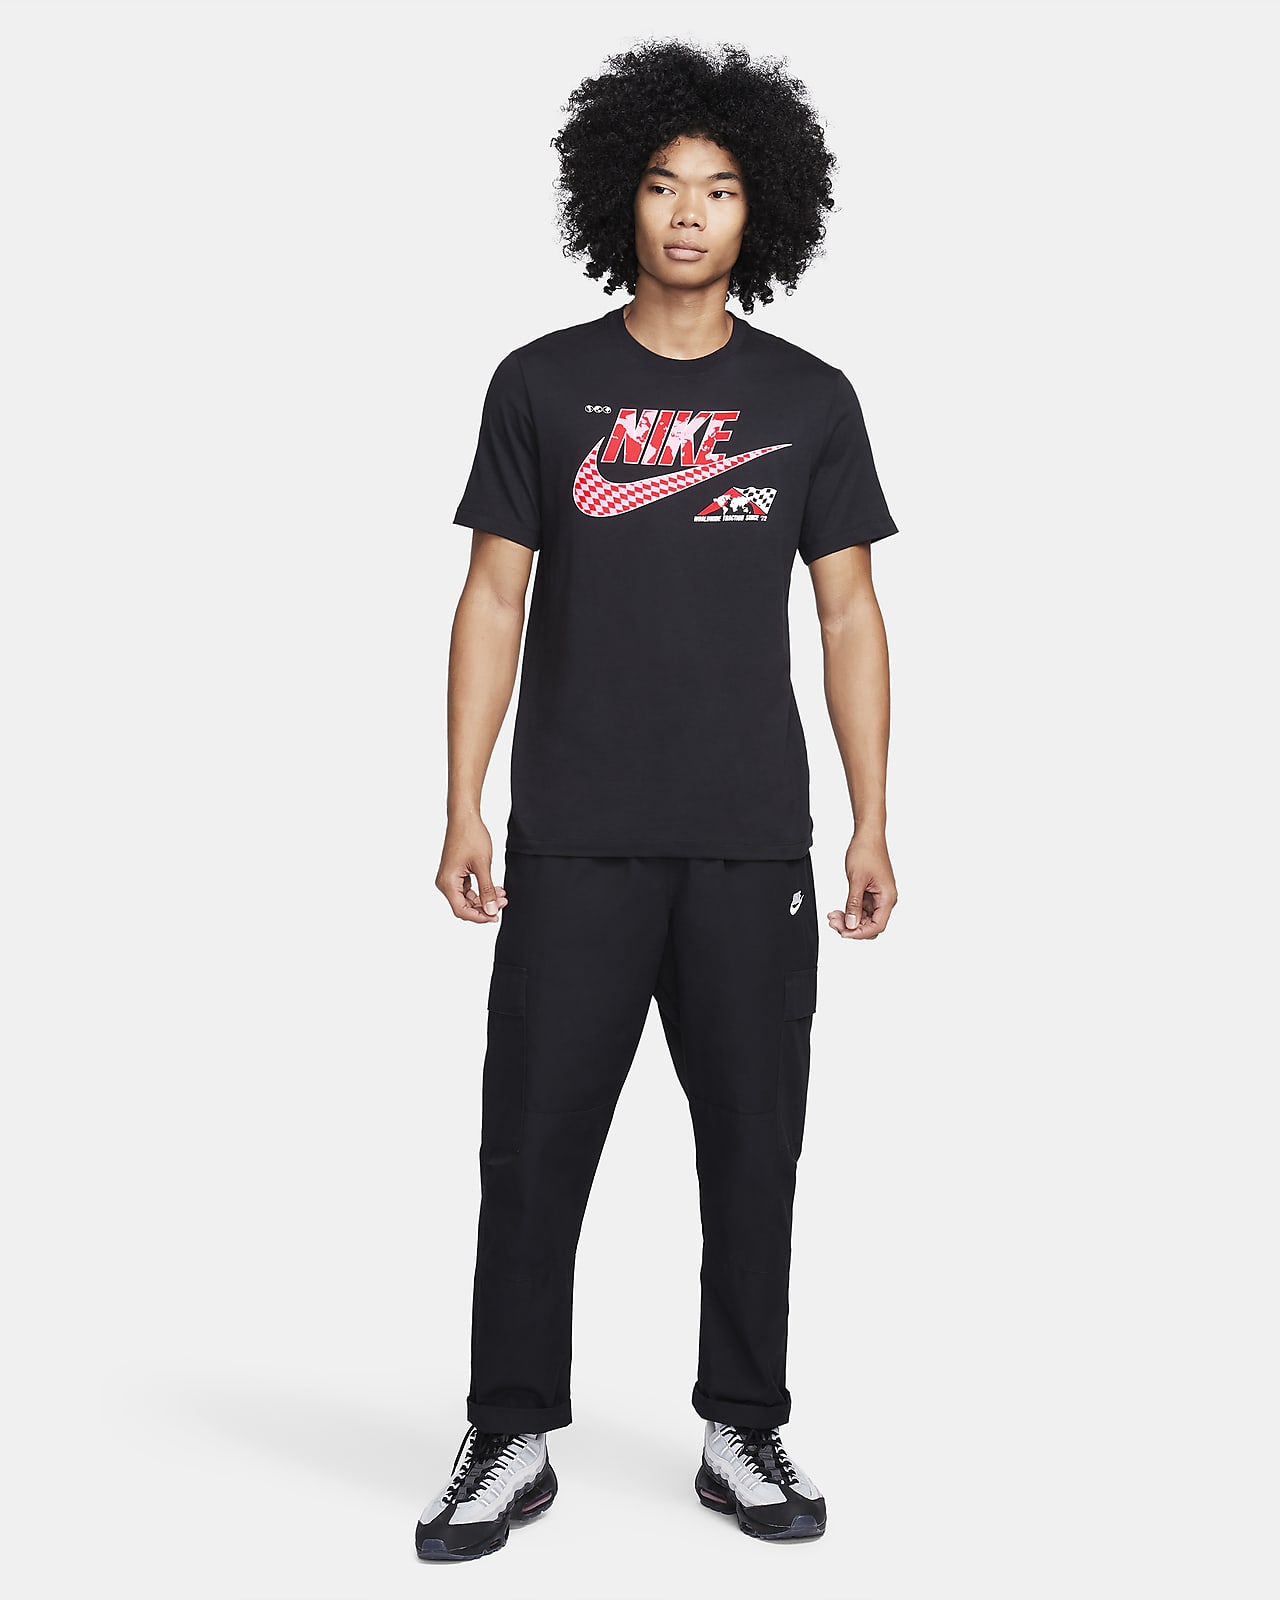 Men's Sportswear Clothing. Nike HR